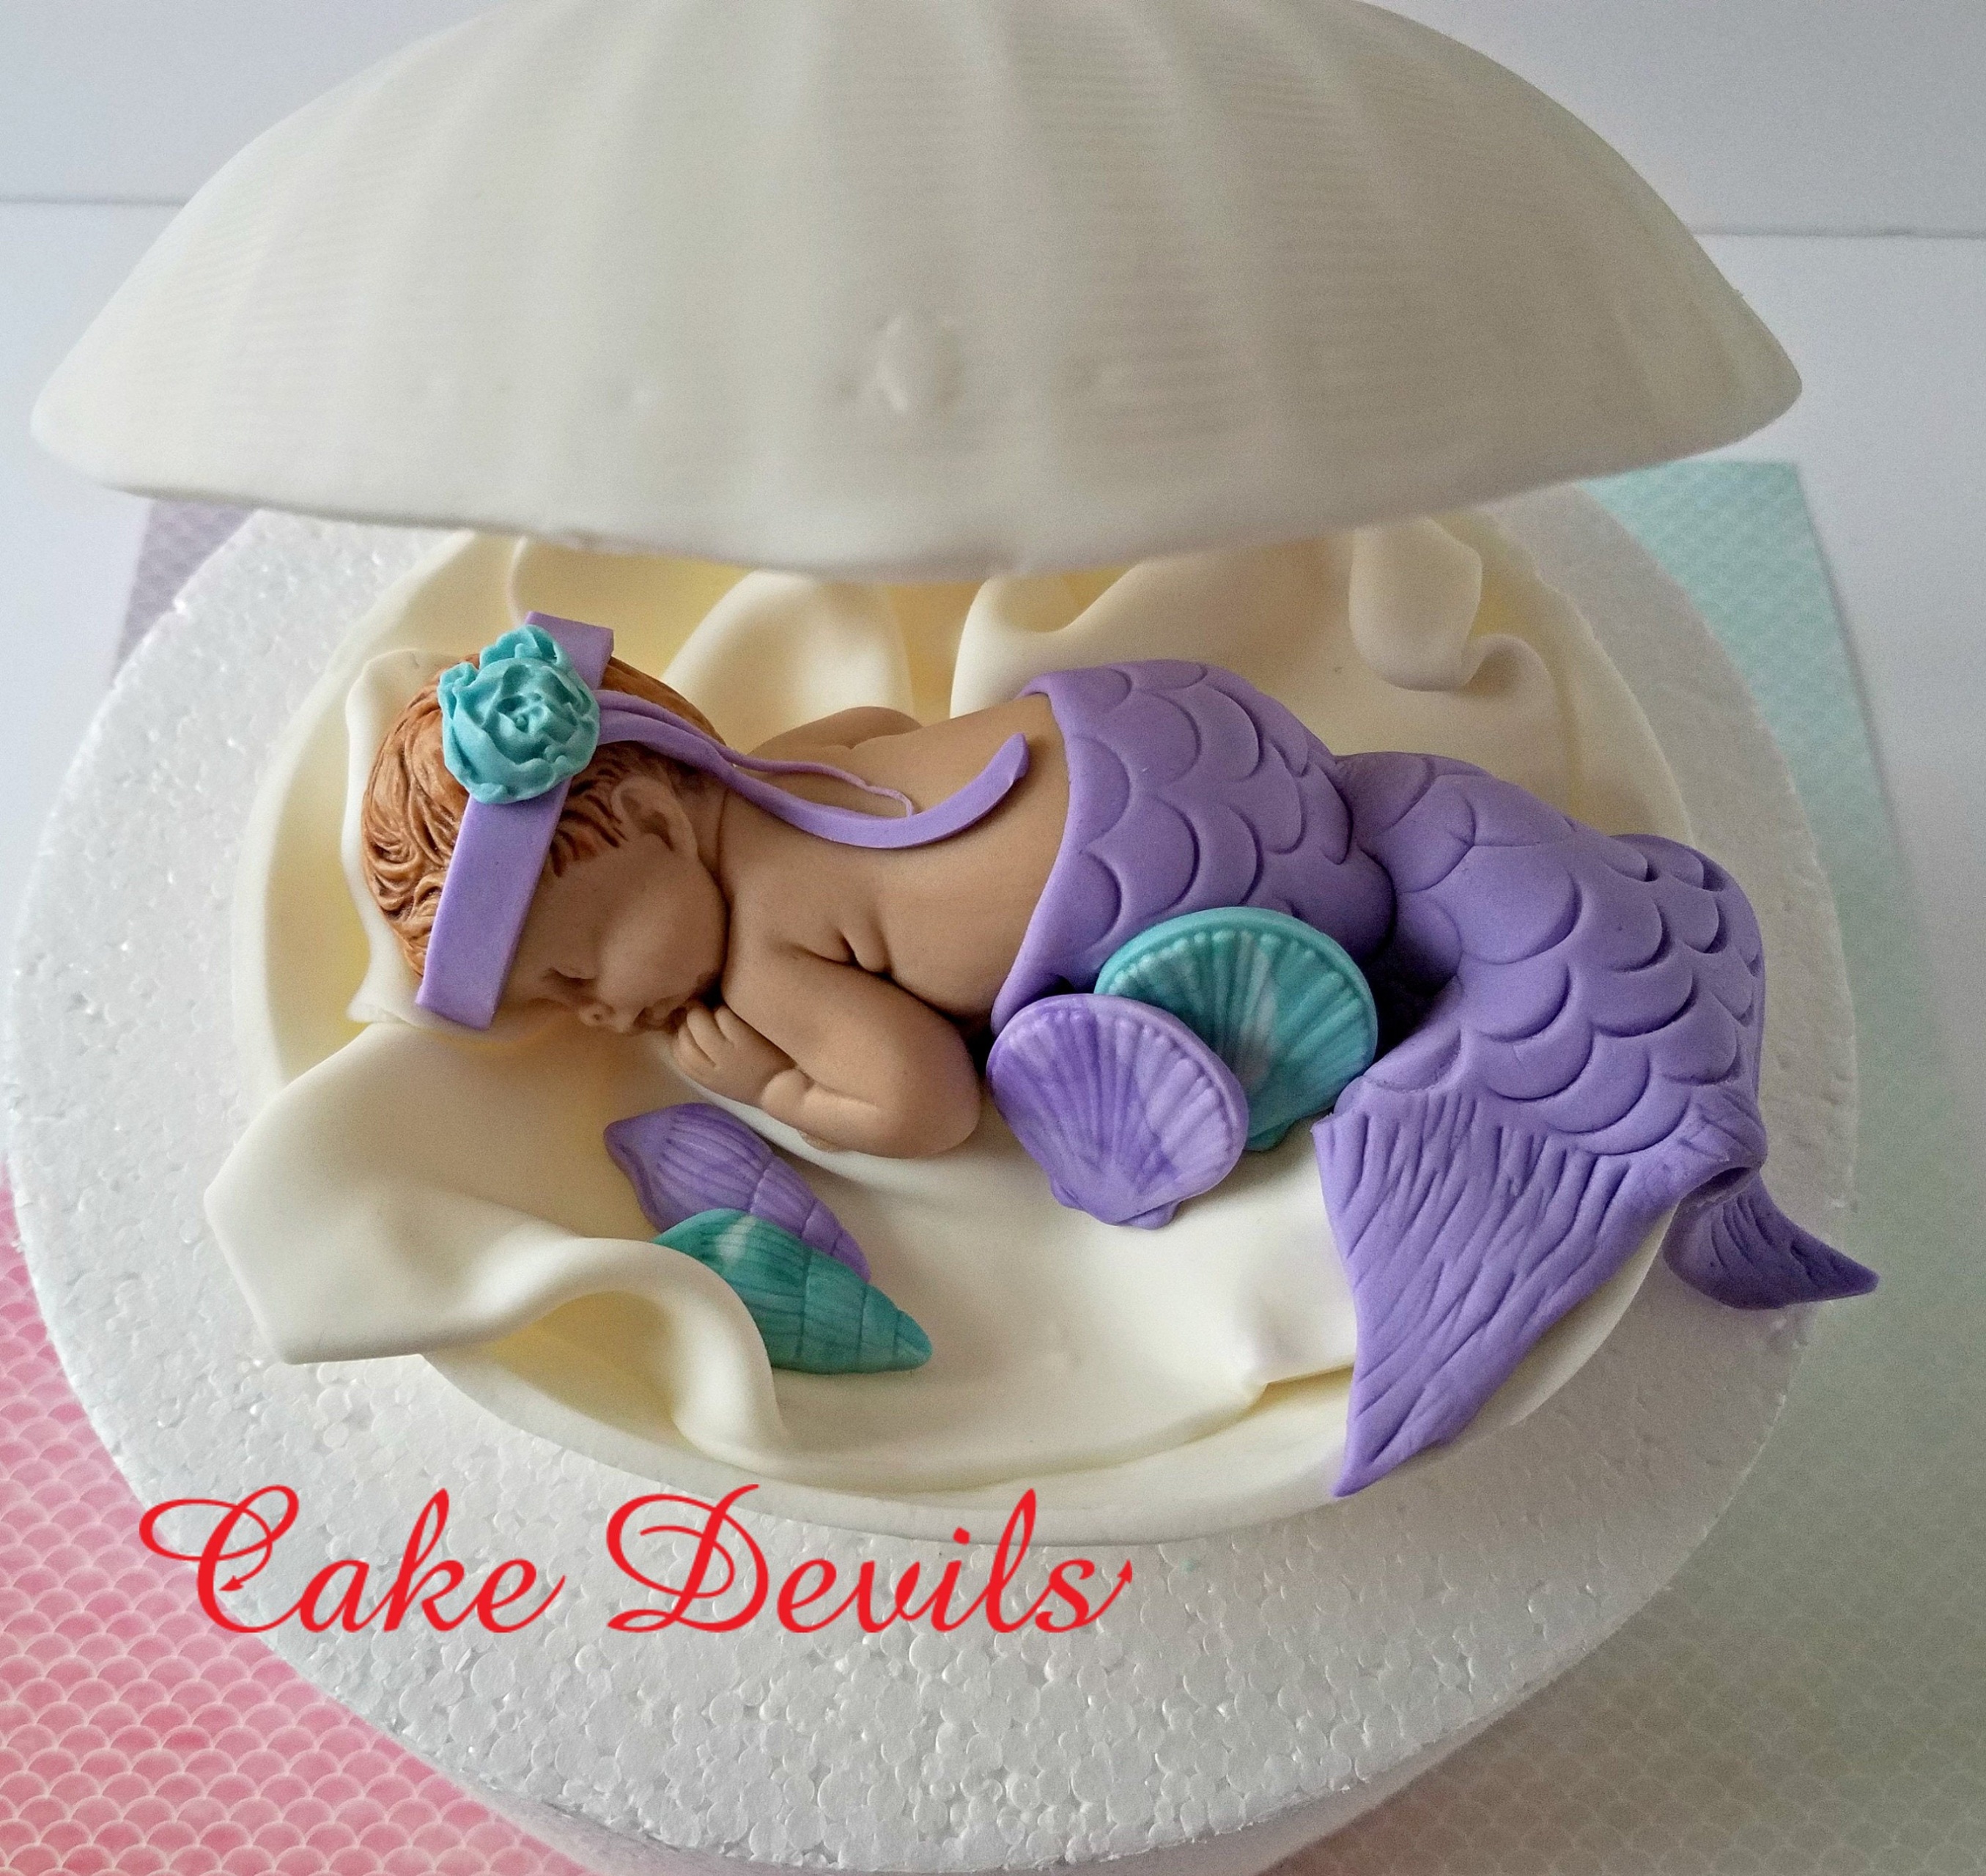 Baby mermaid cake  Decorated Cake by Tiffany DuMoulin  CakesDecor